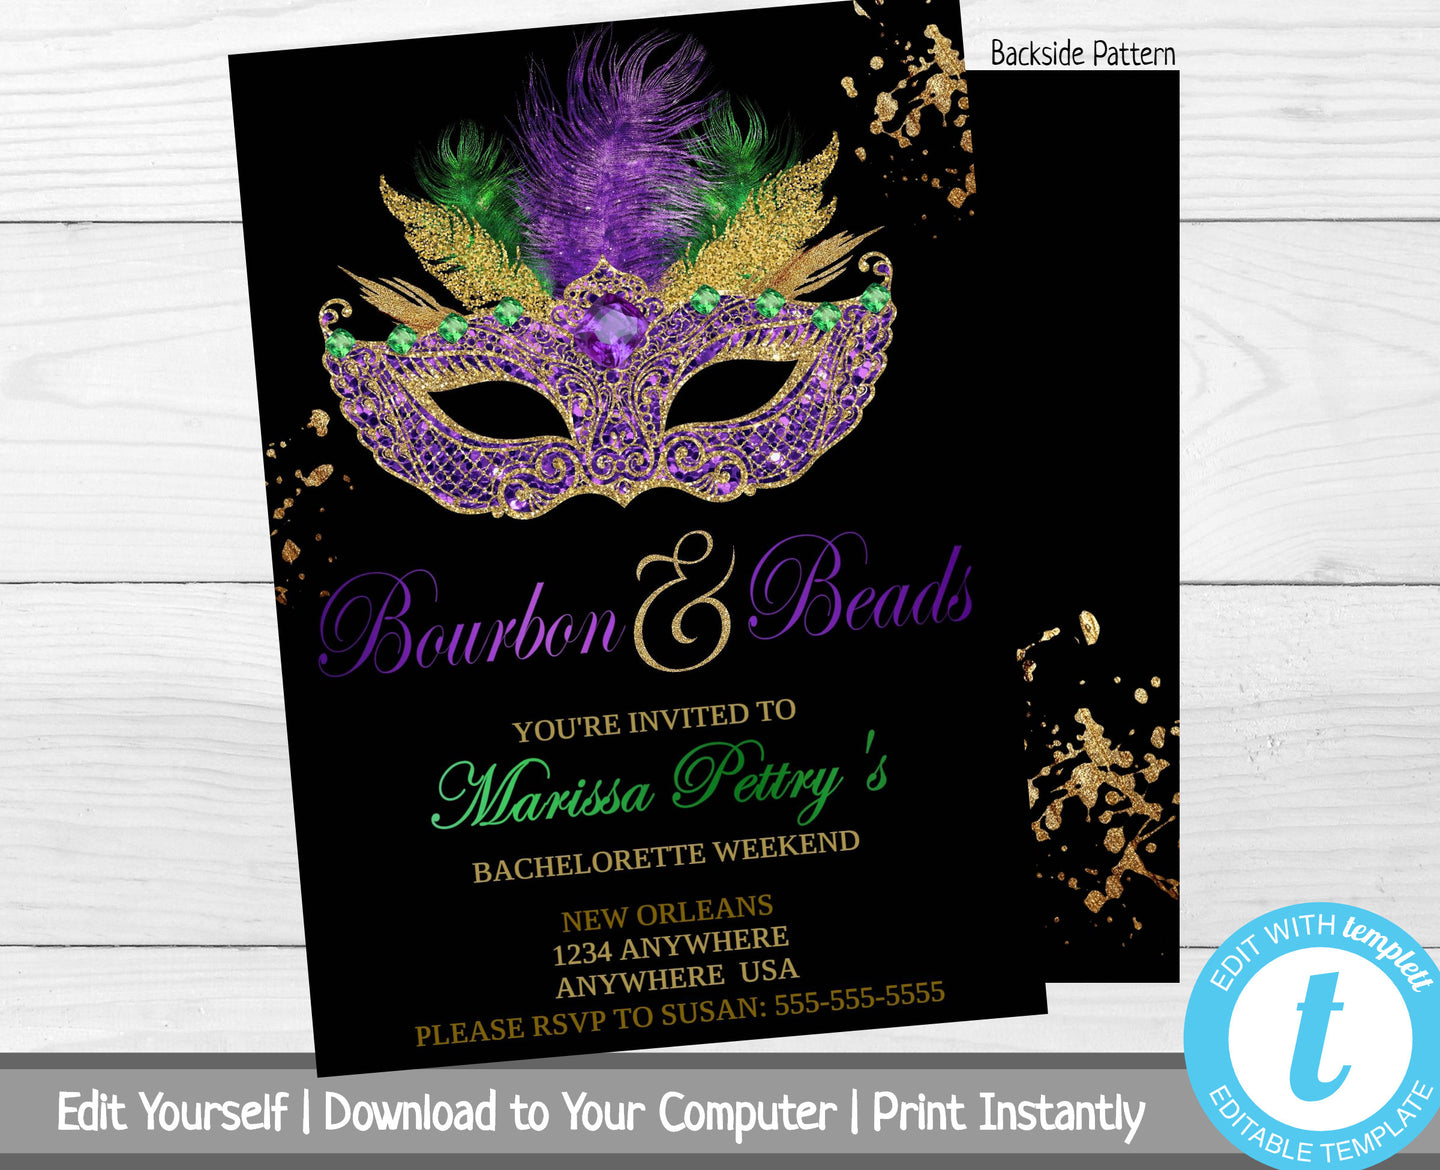 Mardi Gras Bachelorette Party Invitation, Bourbon and Beads, Bachelorette Weekend Invite, Bachelorette Party Invite, Masquerade Party Invite